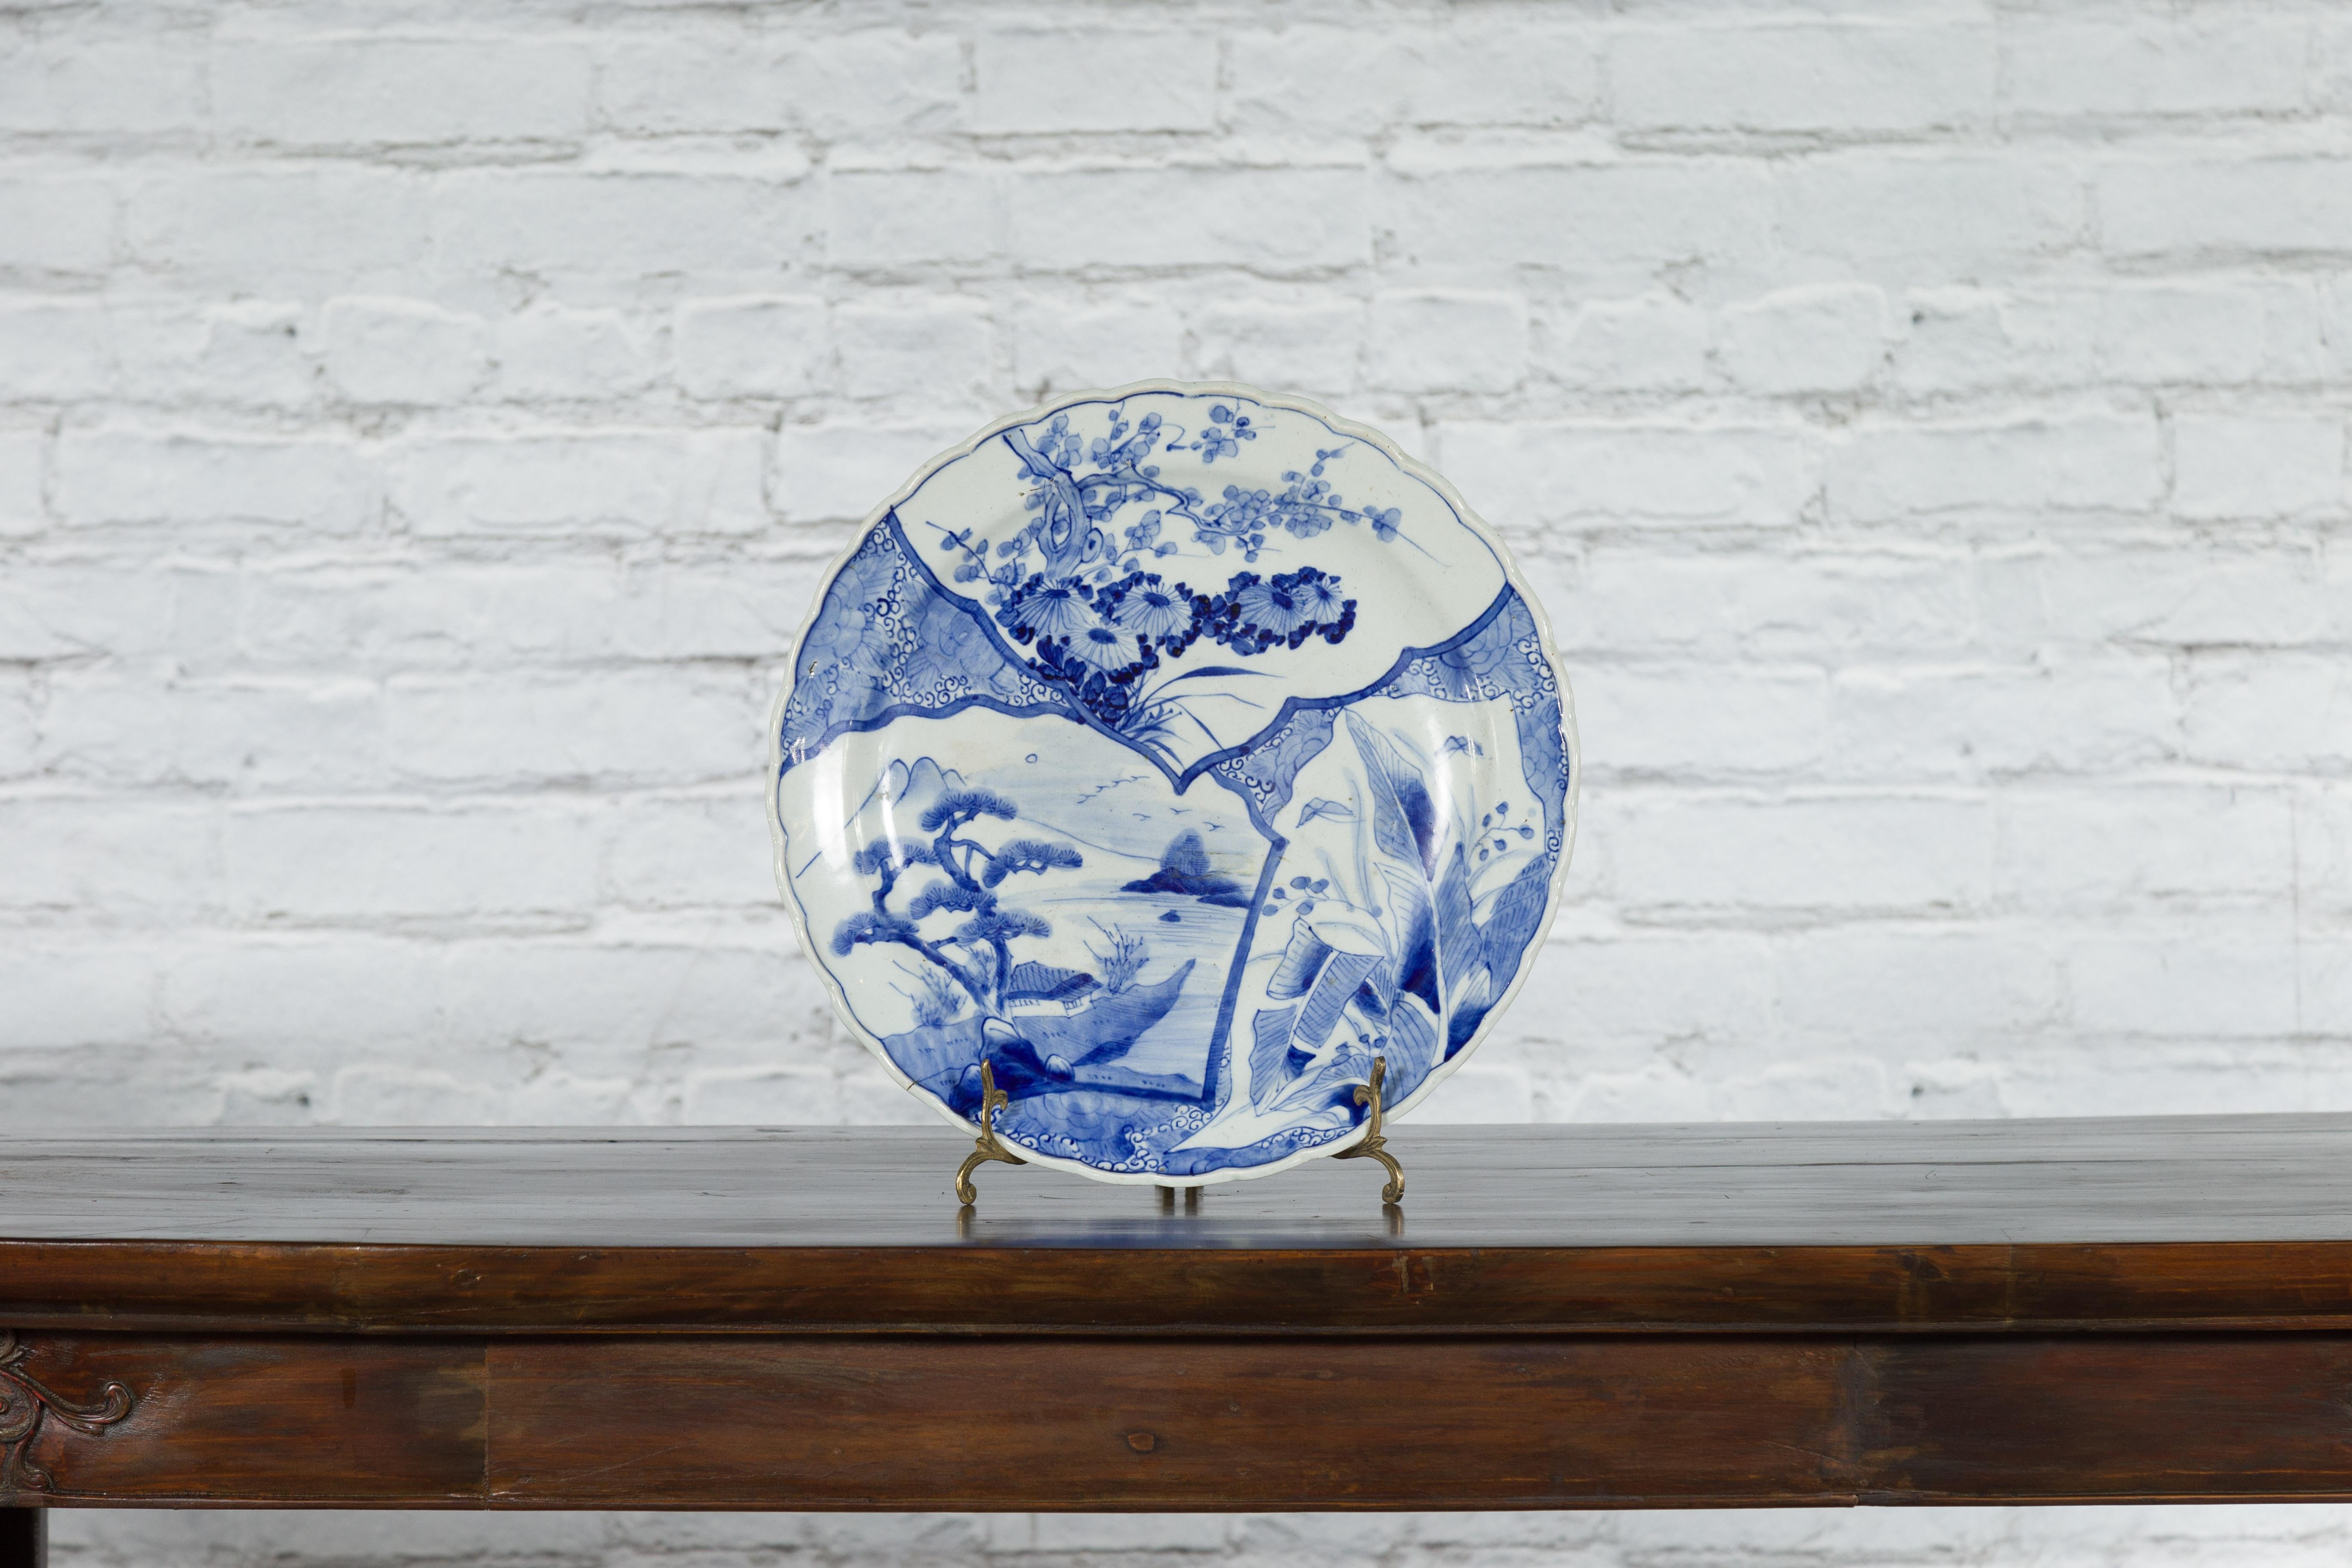 Assiette en porcelaine japonaise Imari du XIXe siècle, à décor bleu et blanc peint à la main de feuillages, d'arbres et d'architecture. Créée au Japon au cours du XIXe siècle, cette assiette en porcelaine Imari présente un délicat décor bleu et